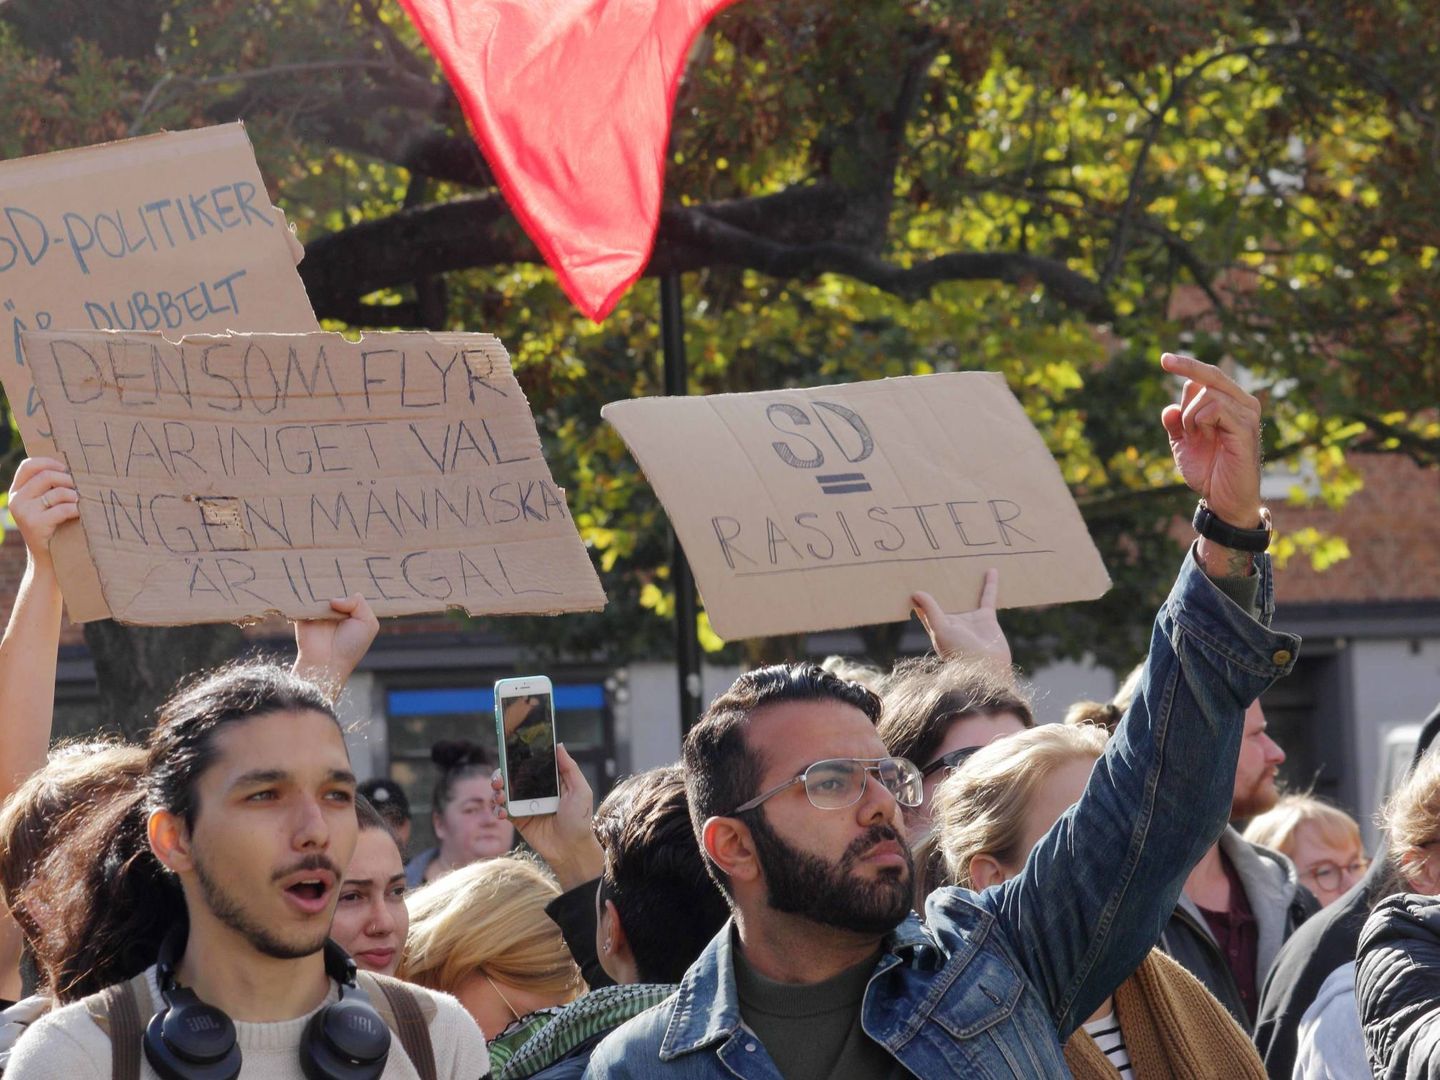 'Demócratas de Suecia igual a racistas', dice en una de las pancartas que exhiben los manifestantes. (Ton Falqués)